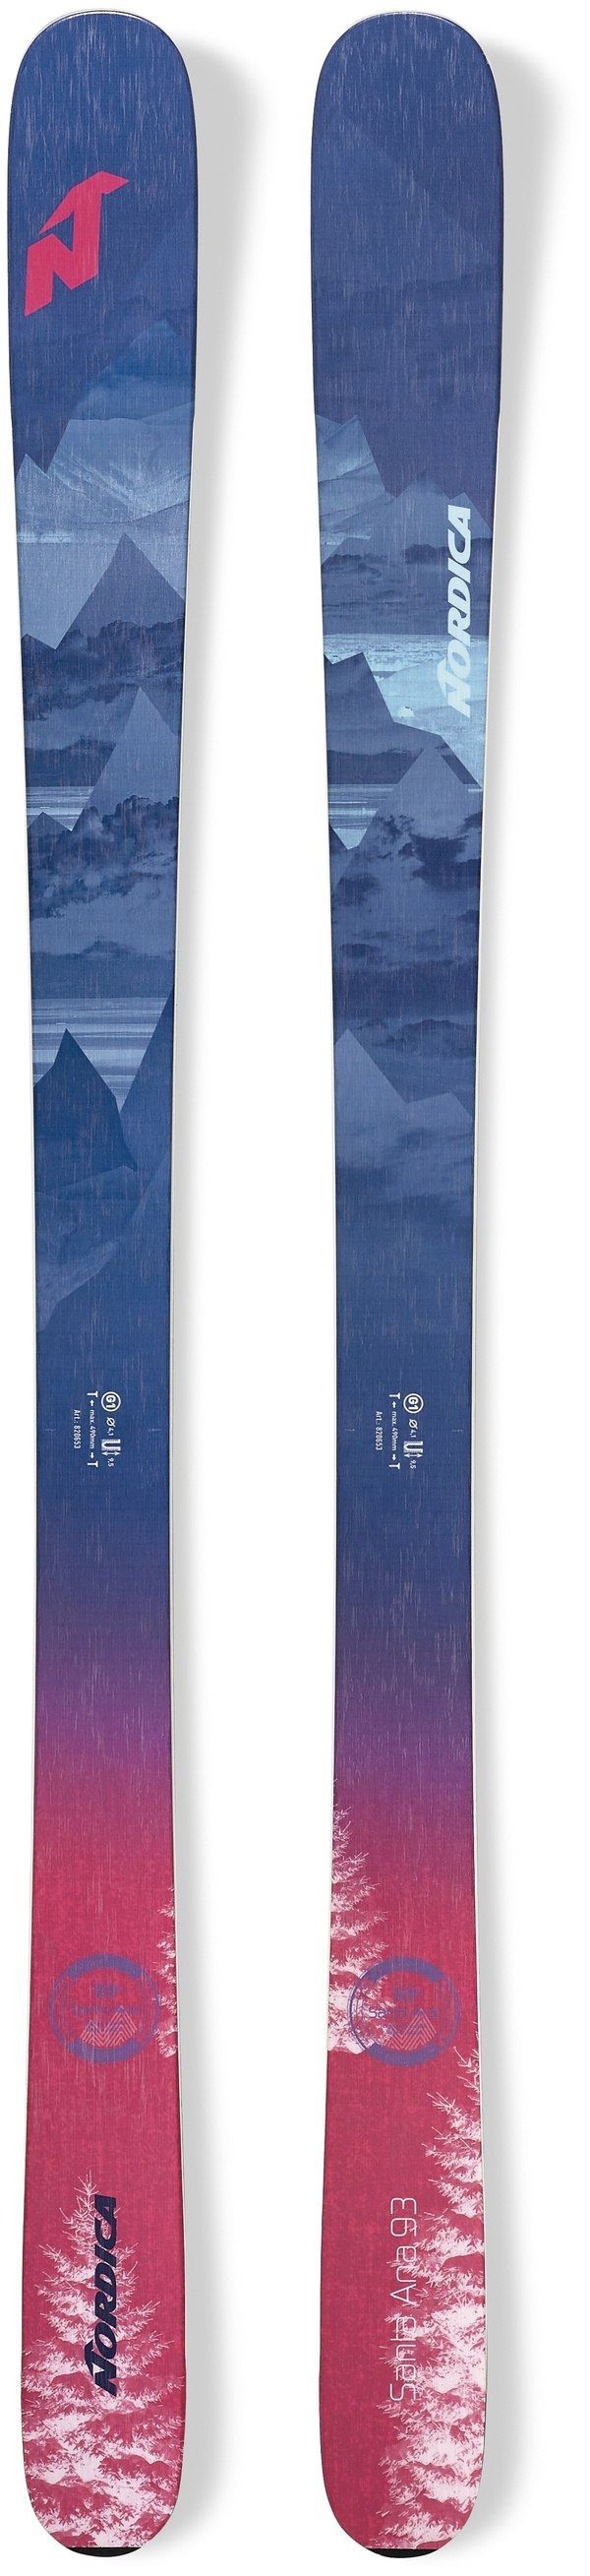 New , 2020, Nordica, Santa Ana 93 Women's Skis 161cm